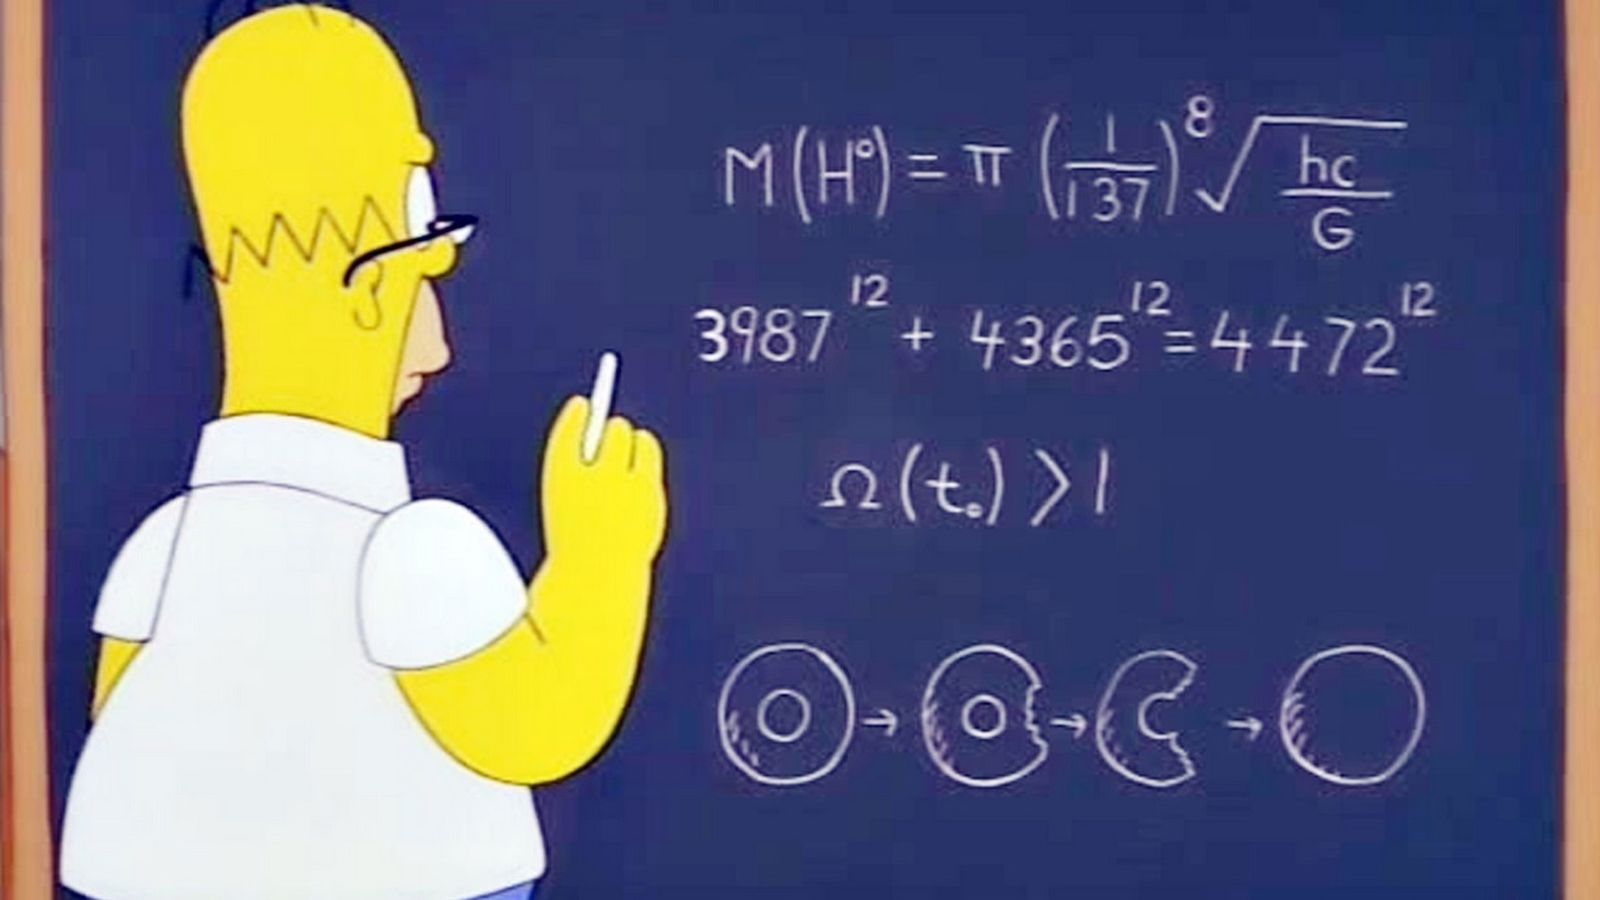 Foto: La ecuación de Homer en un episodio de 'Los Simpson' de 1998 casi desvela la verdad sobre el bosón de Higgs 14 años antes que la ciencia